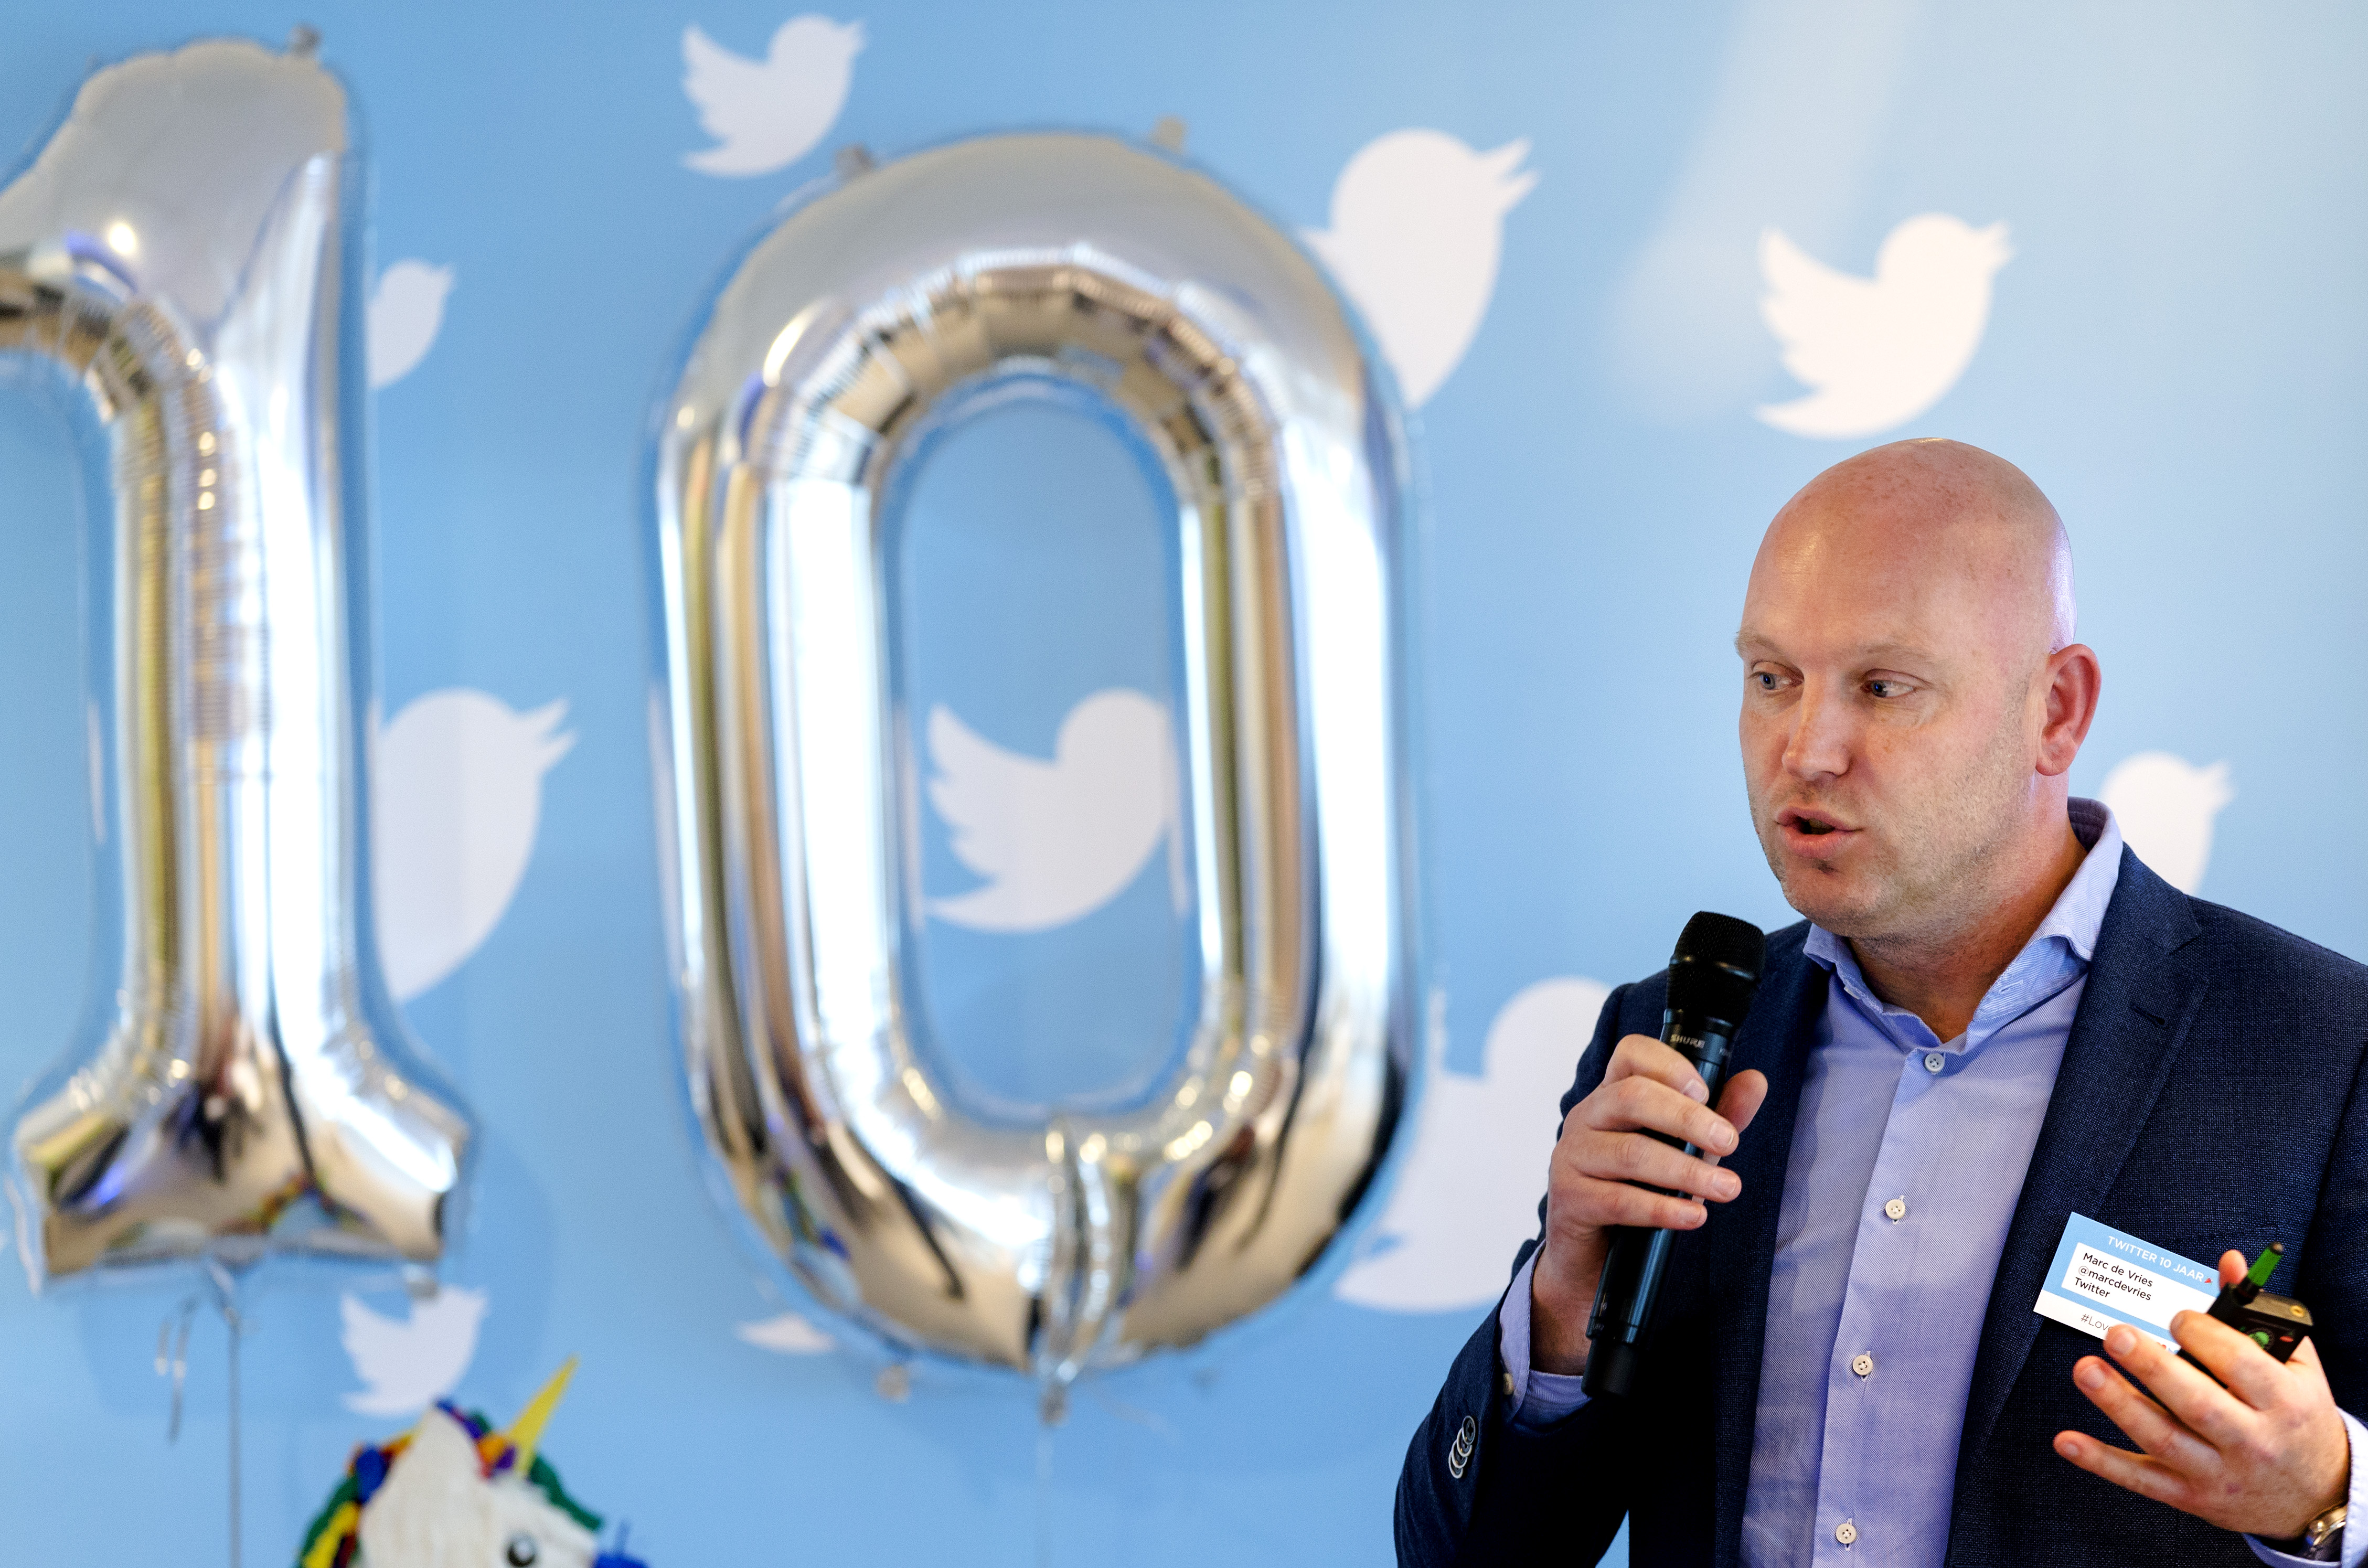 In maart bestond Twitter tien jaar. Op de foto Marc de Vries, directeur Benelux bij Twitter, op het feestje vanwege het tienjarig bestaan. Foto: ANP